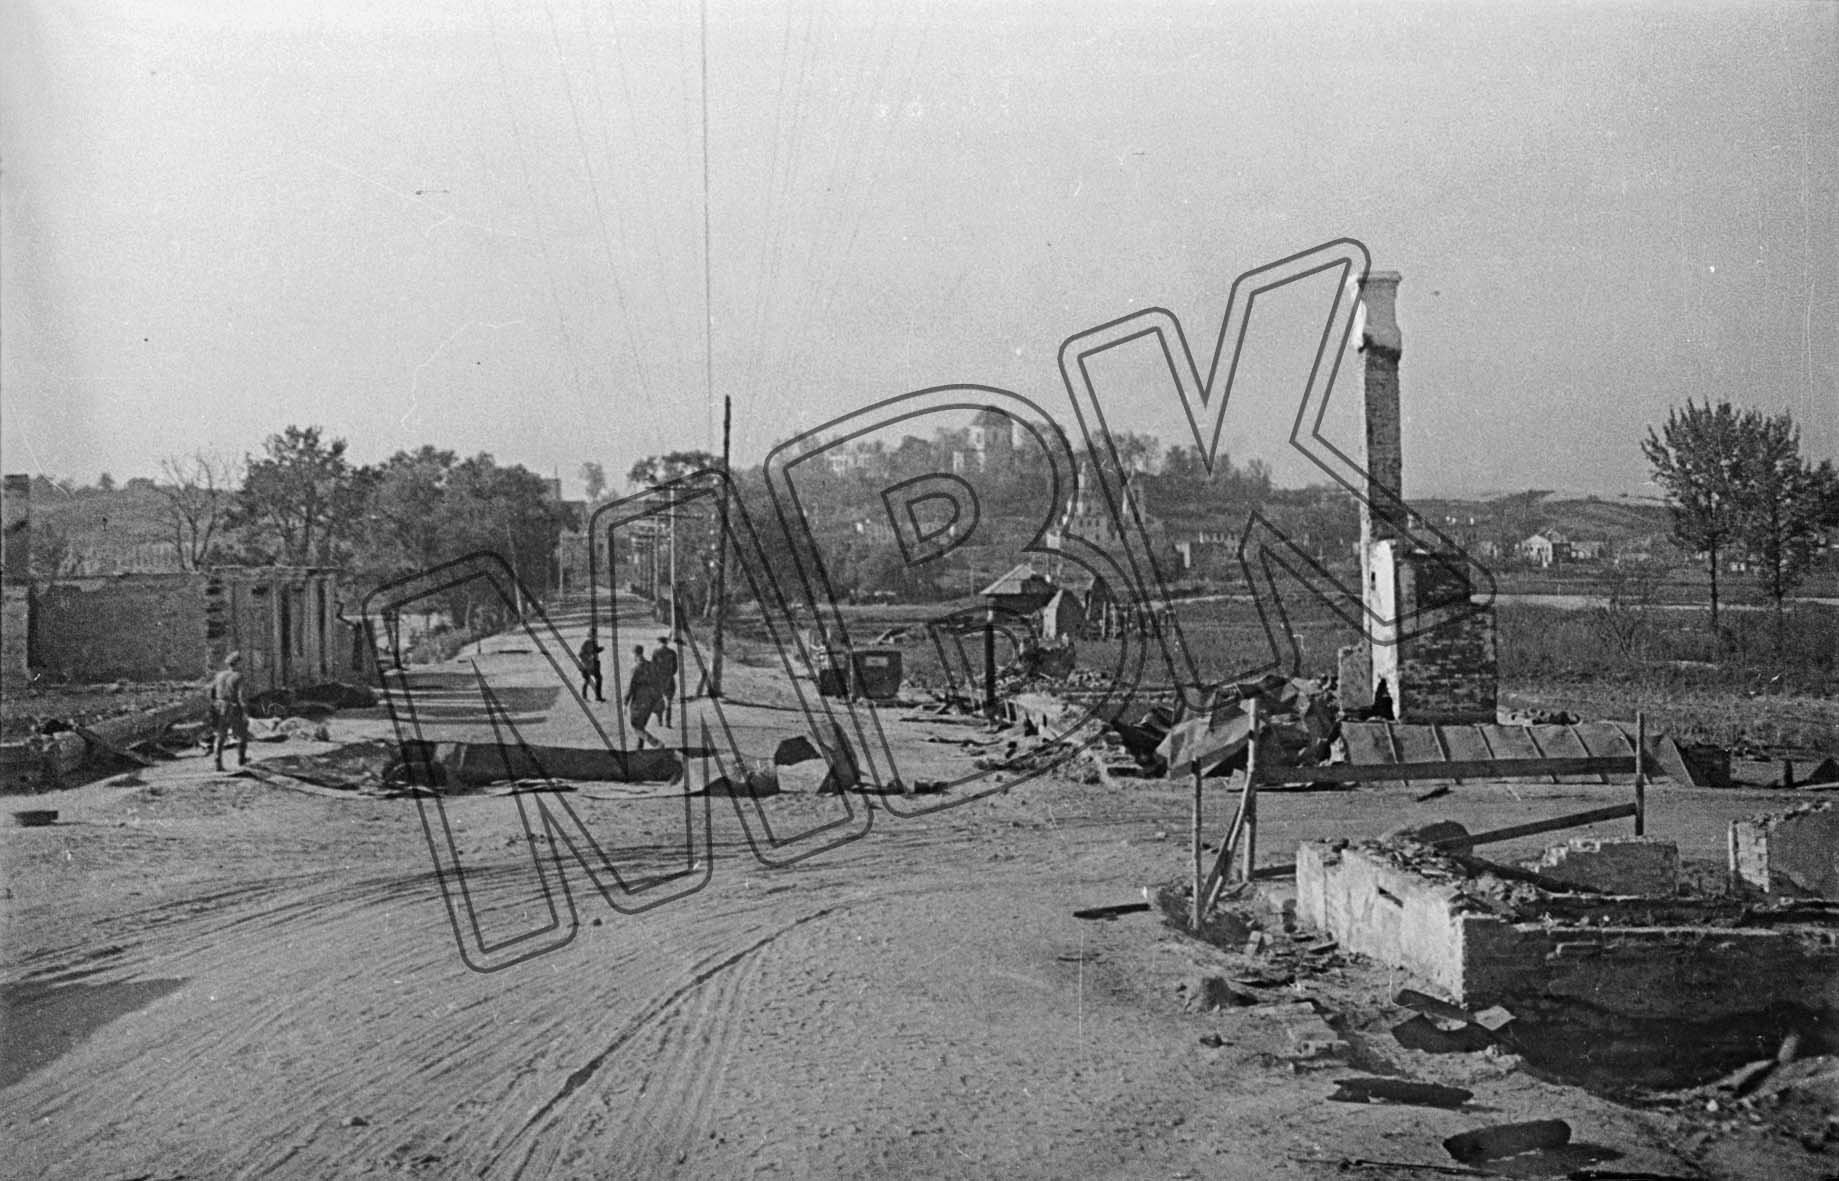 Fotografie: Dorogobush nach deutschen Luftangriffen, Gebiet Smolensk, 26. Juli 1941 (Museum Berlin-Karlshorst RR-P)